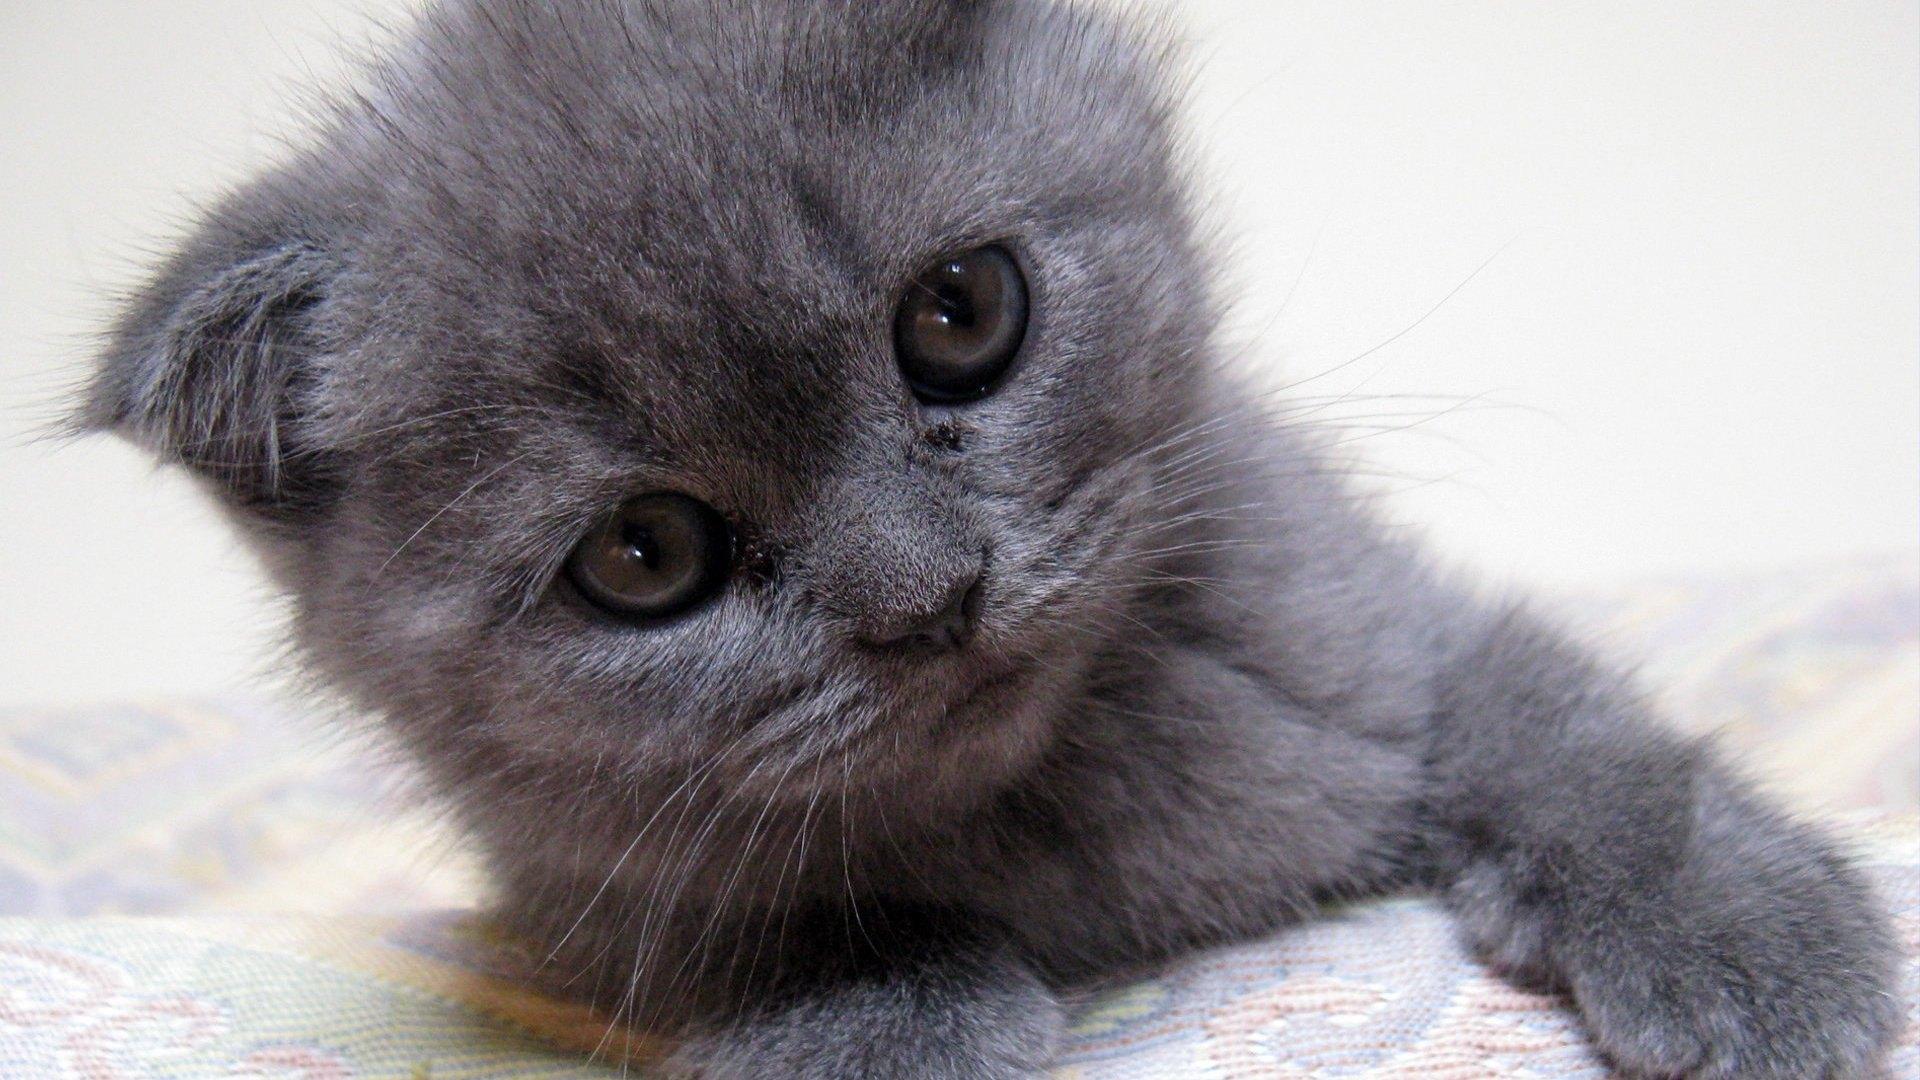 可爱逗人的灰色小猫咪高清壁纸下载-壁纸图片大全